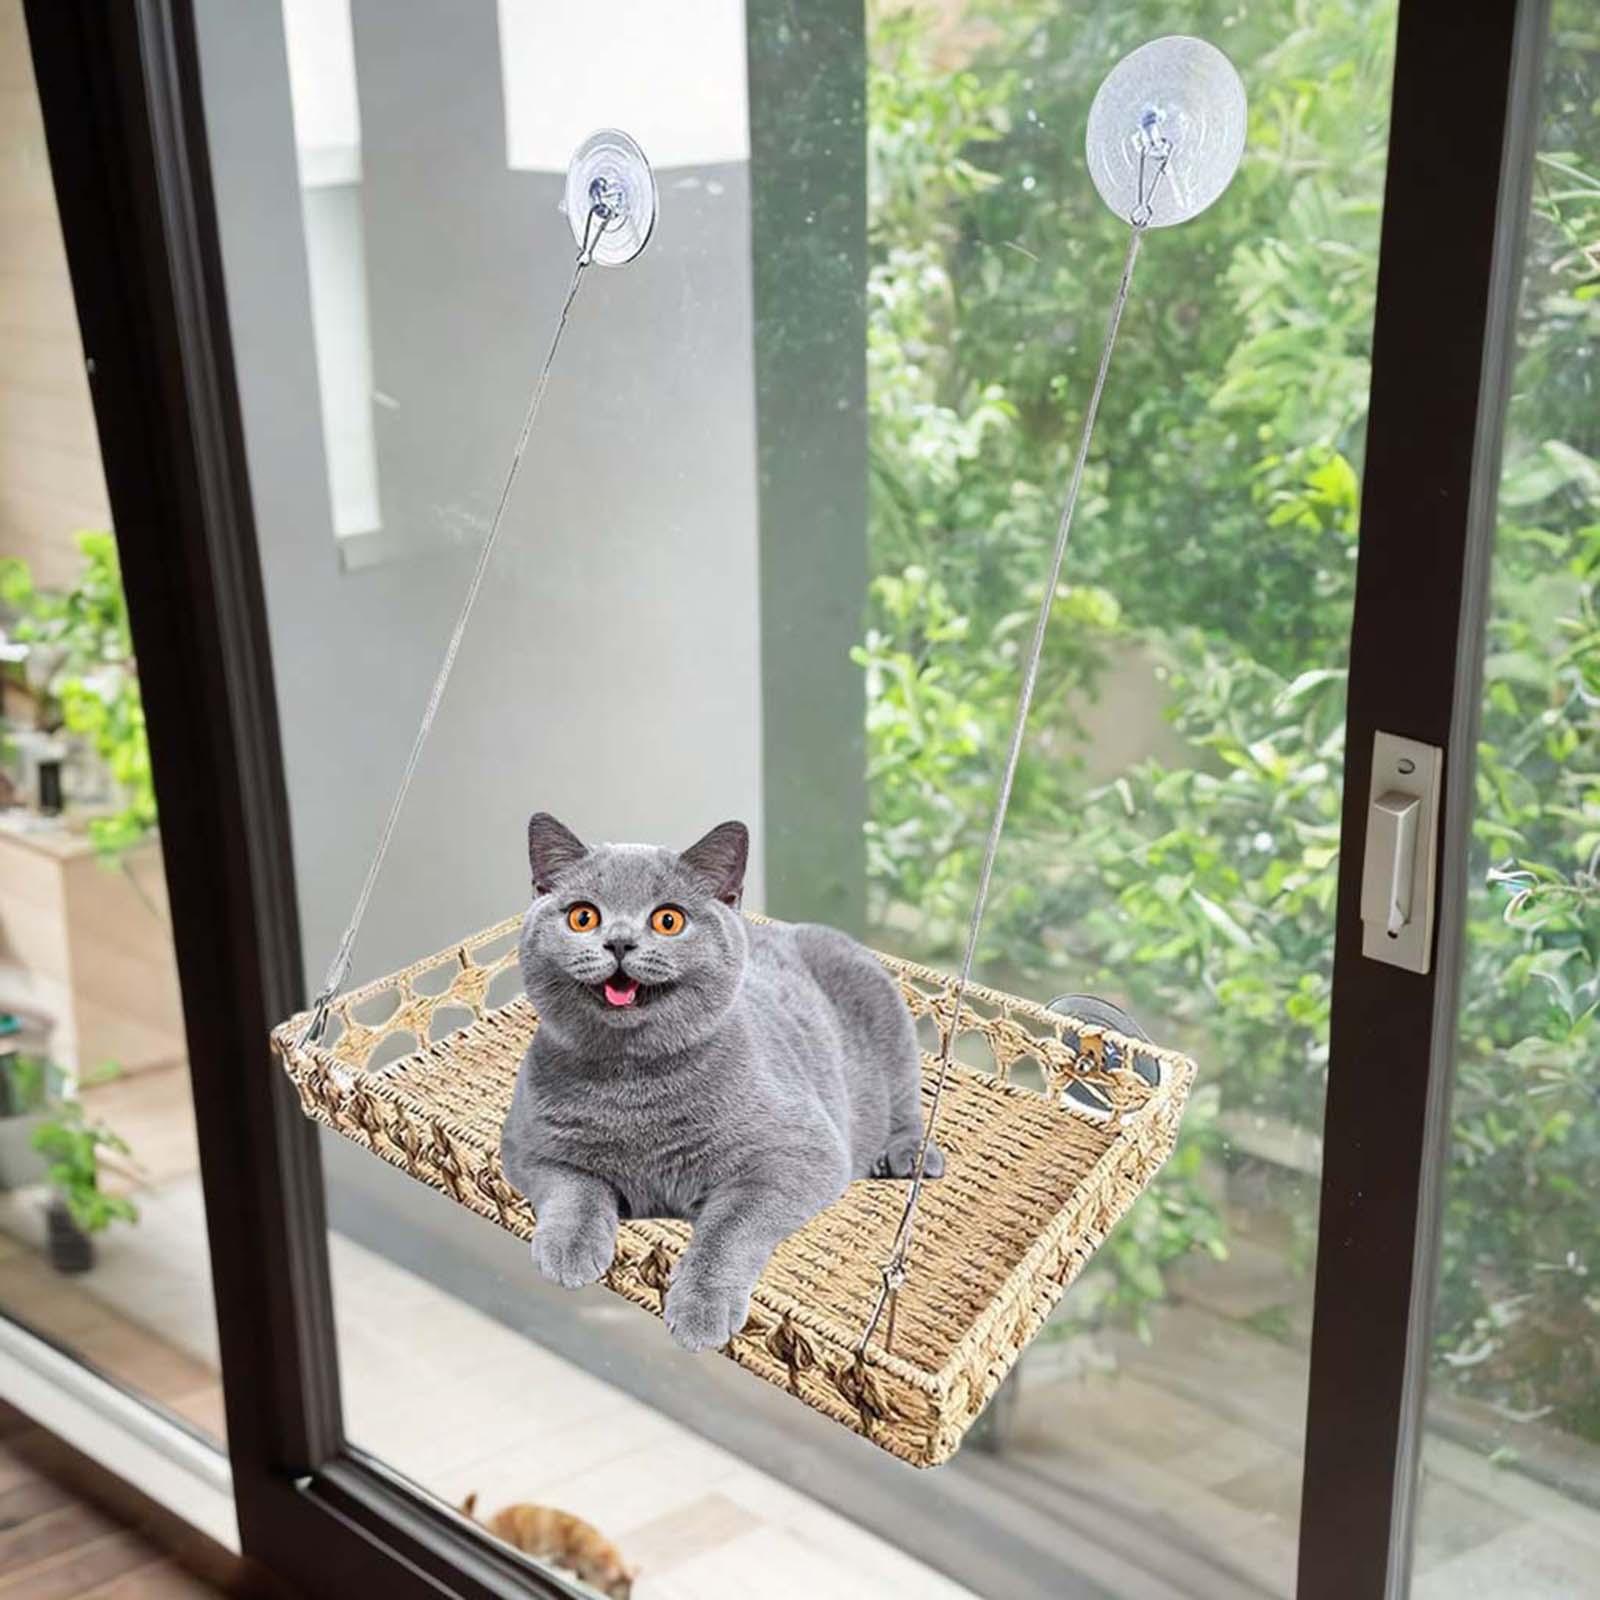 Serally chỗ nằm cho Mèo Bên Cửa Sổ võng cho mèo cửa sổ gắn cá rô tắm nắng